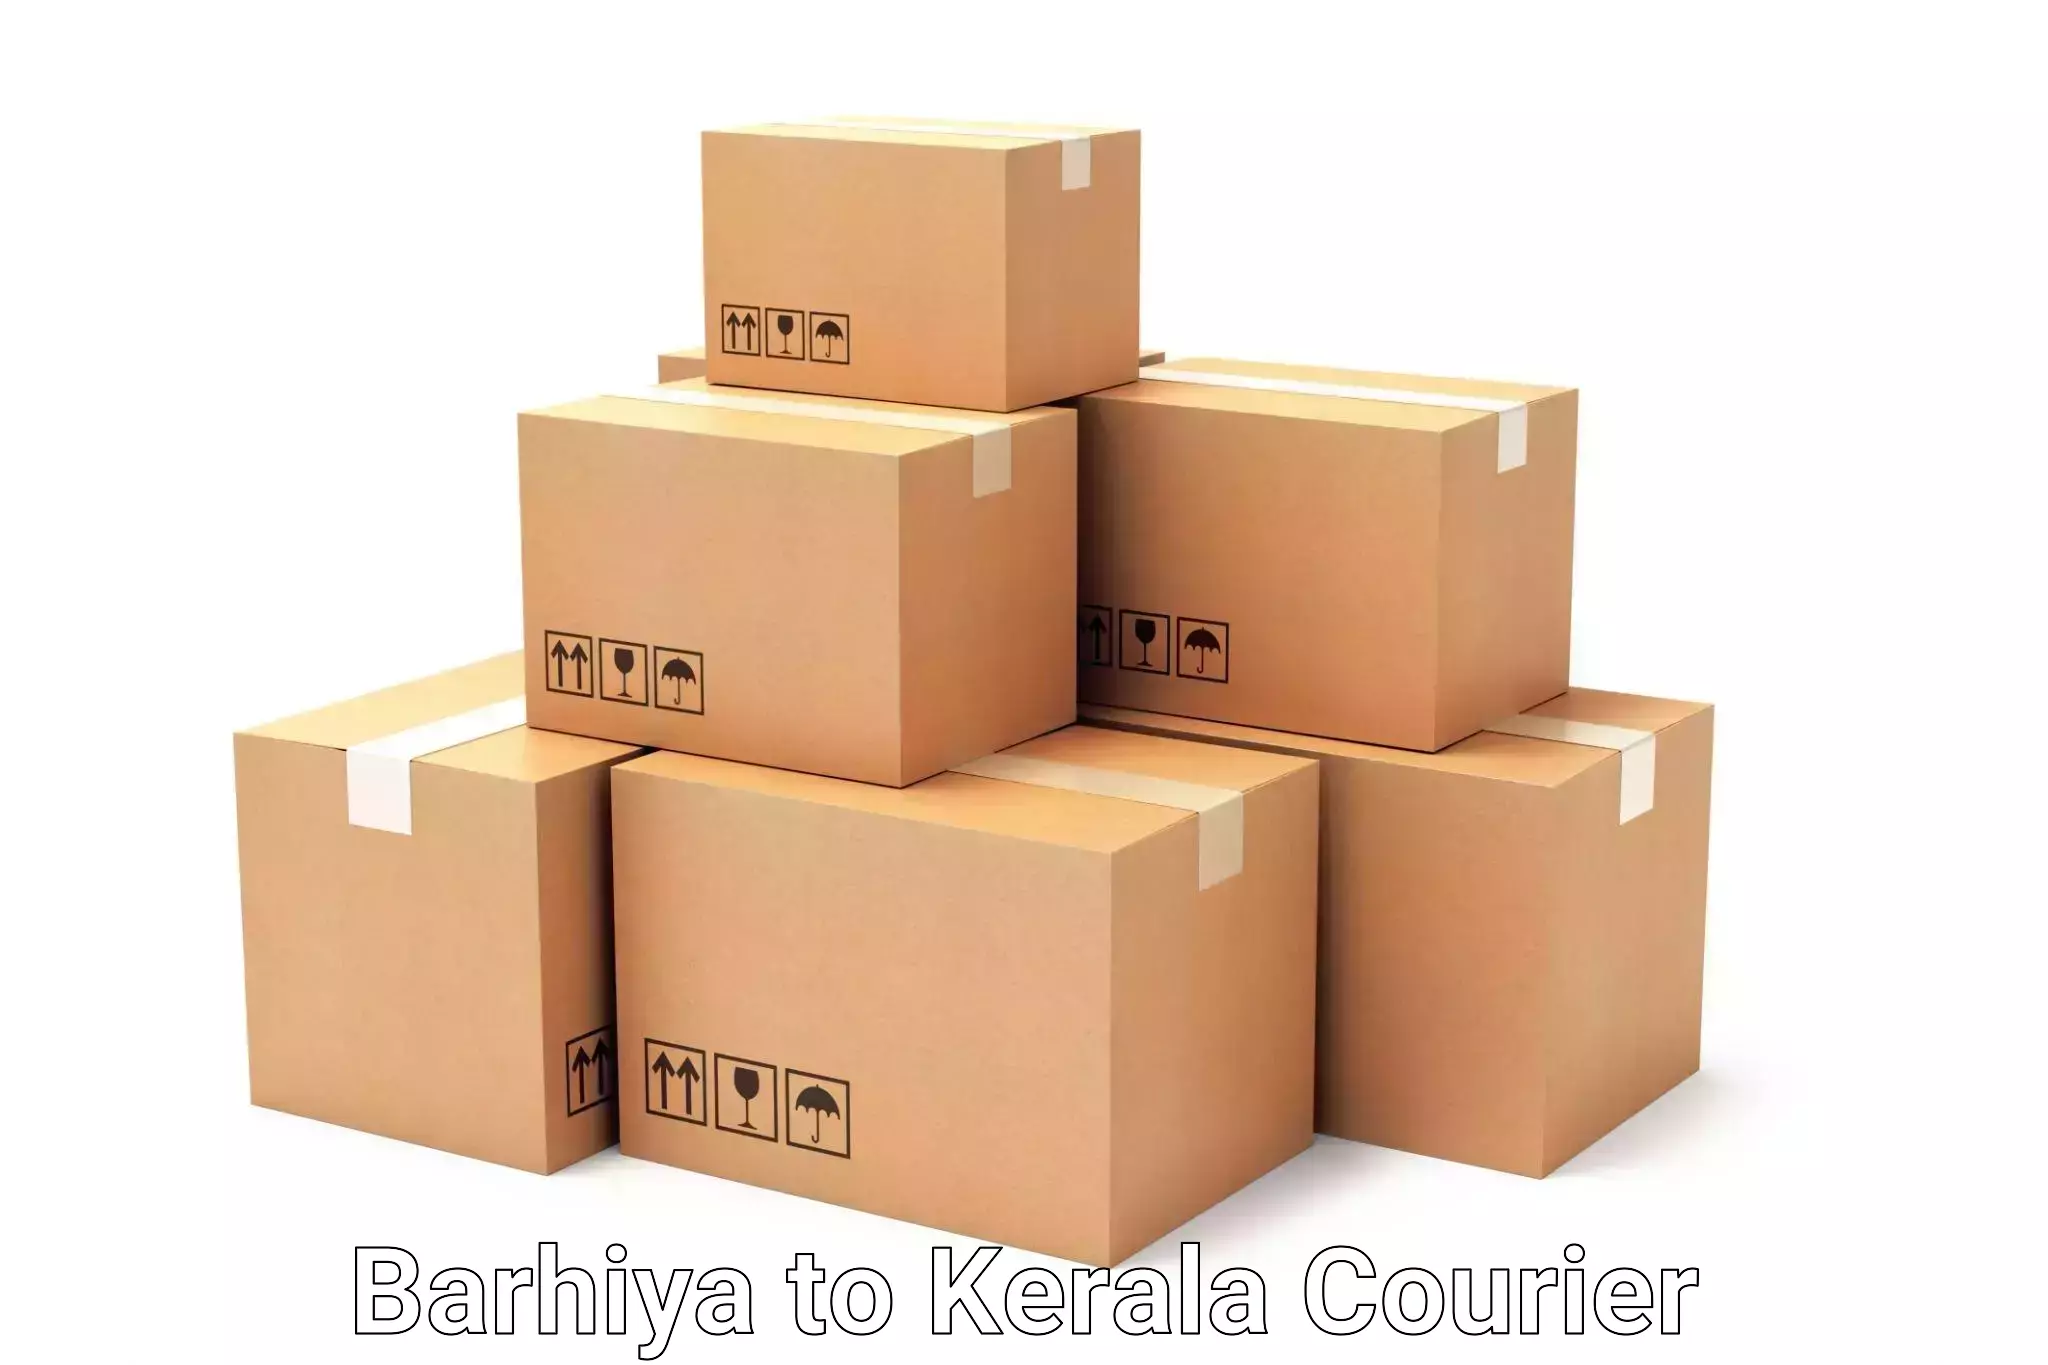 Express luggage delivery Barhiya to Kasaragod